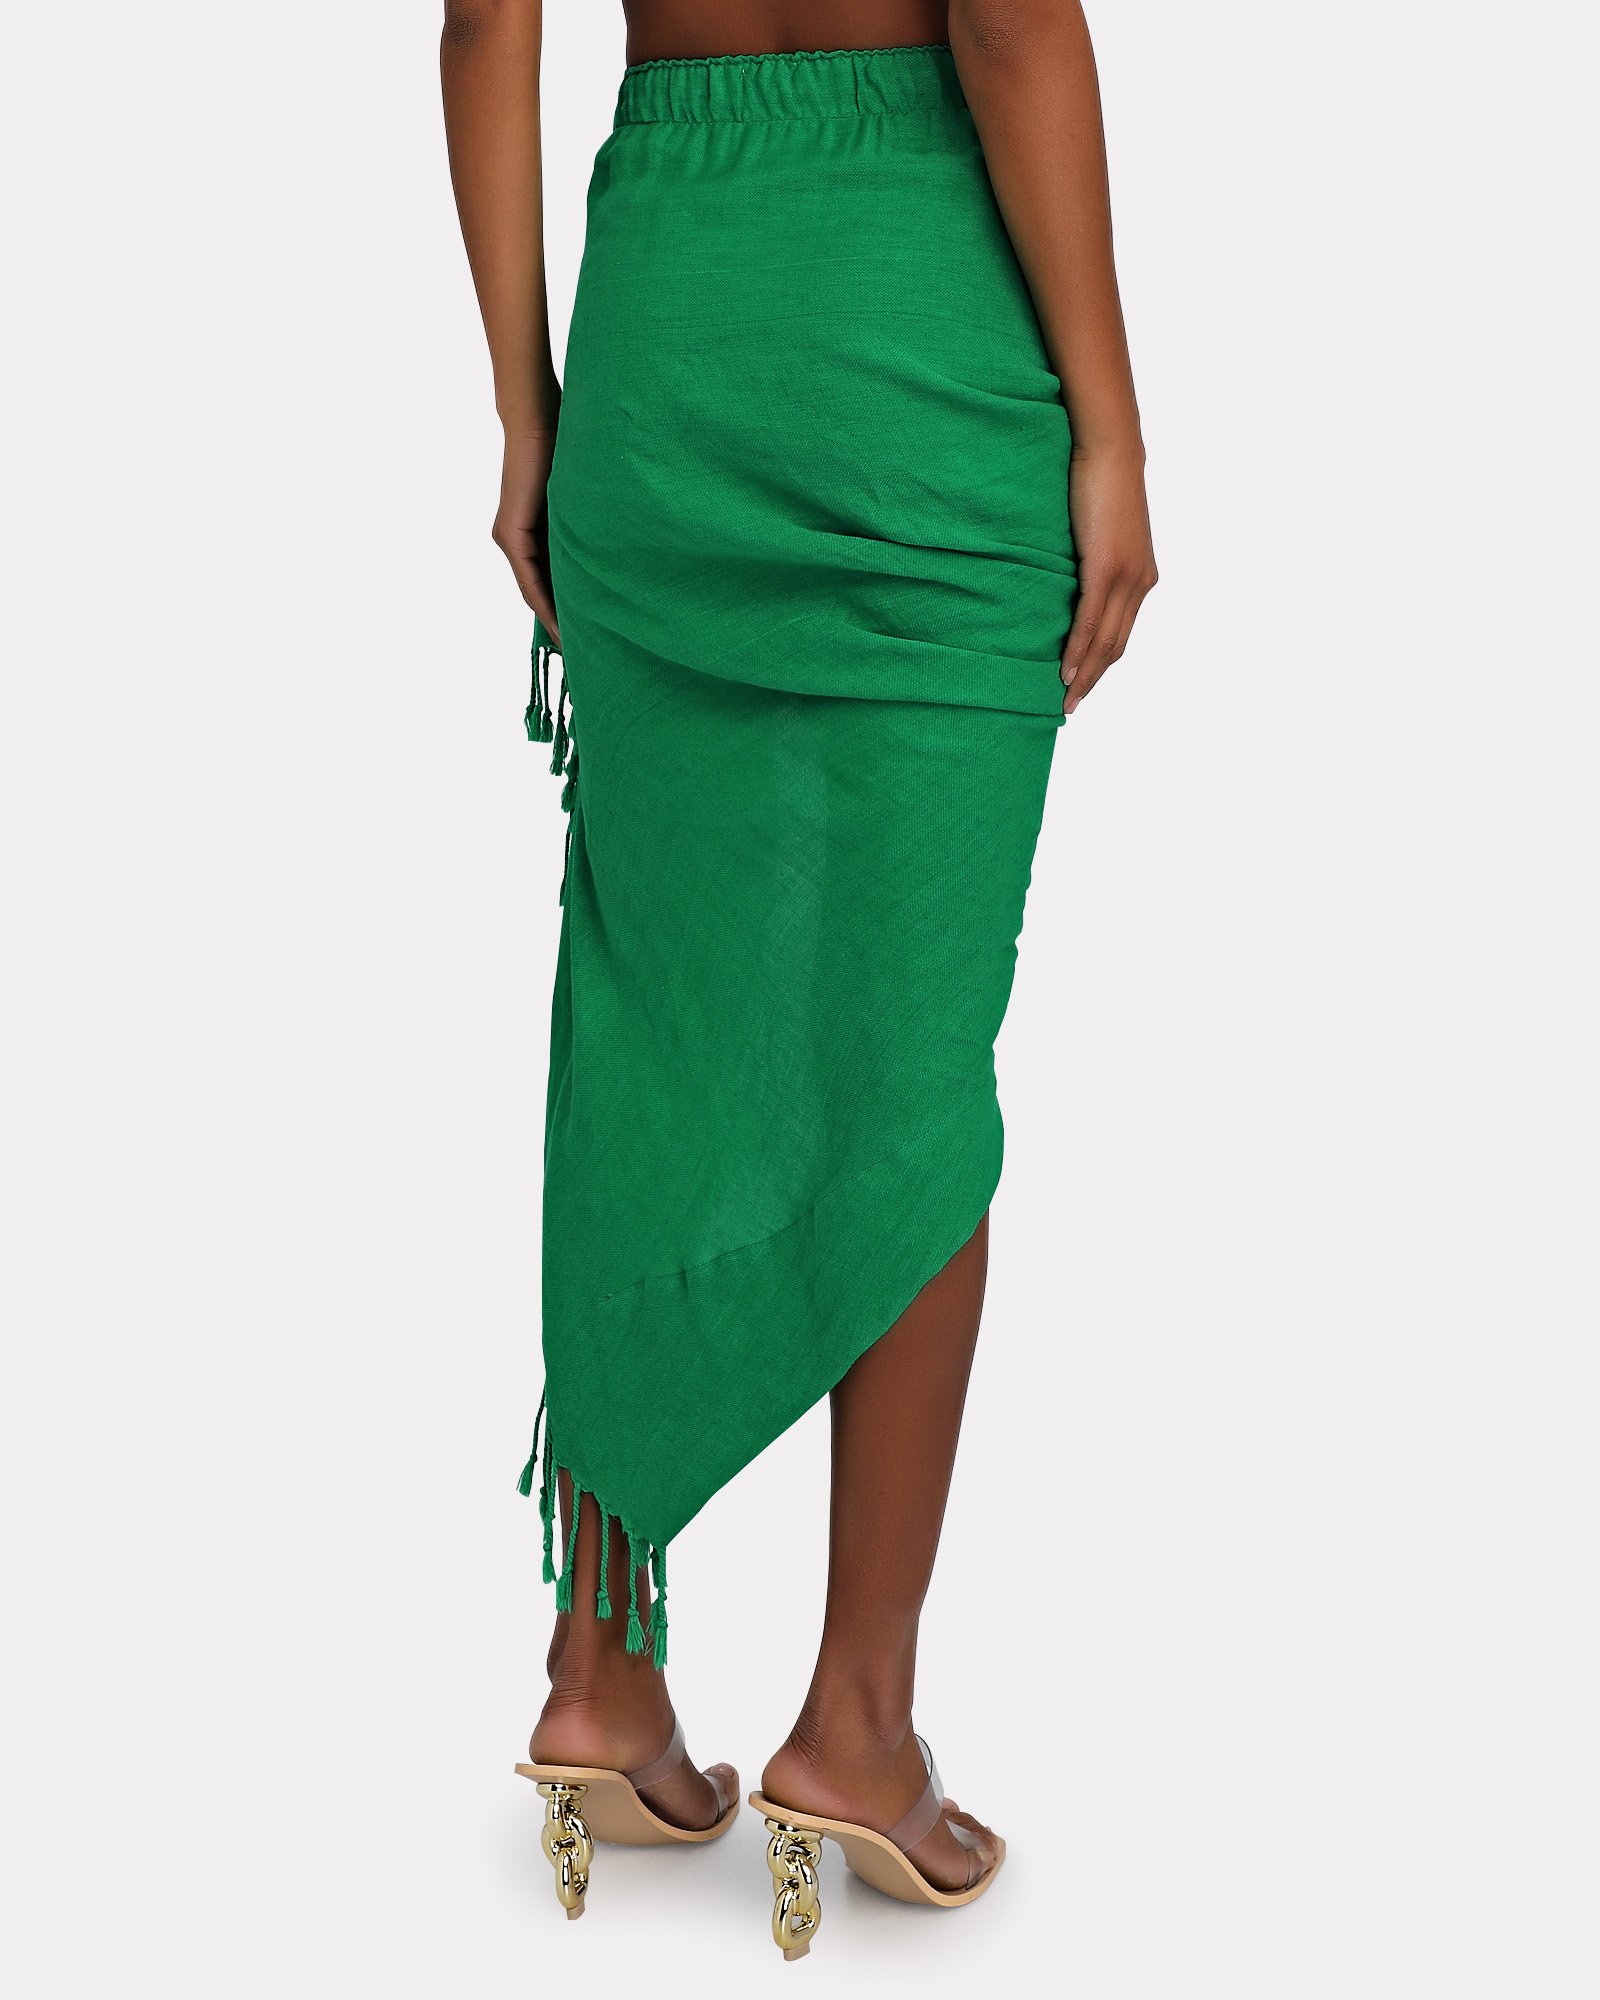 Just Bee Queen Tulum Skirt In Green | INTERMIX®